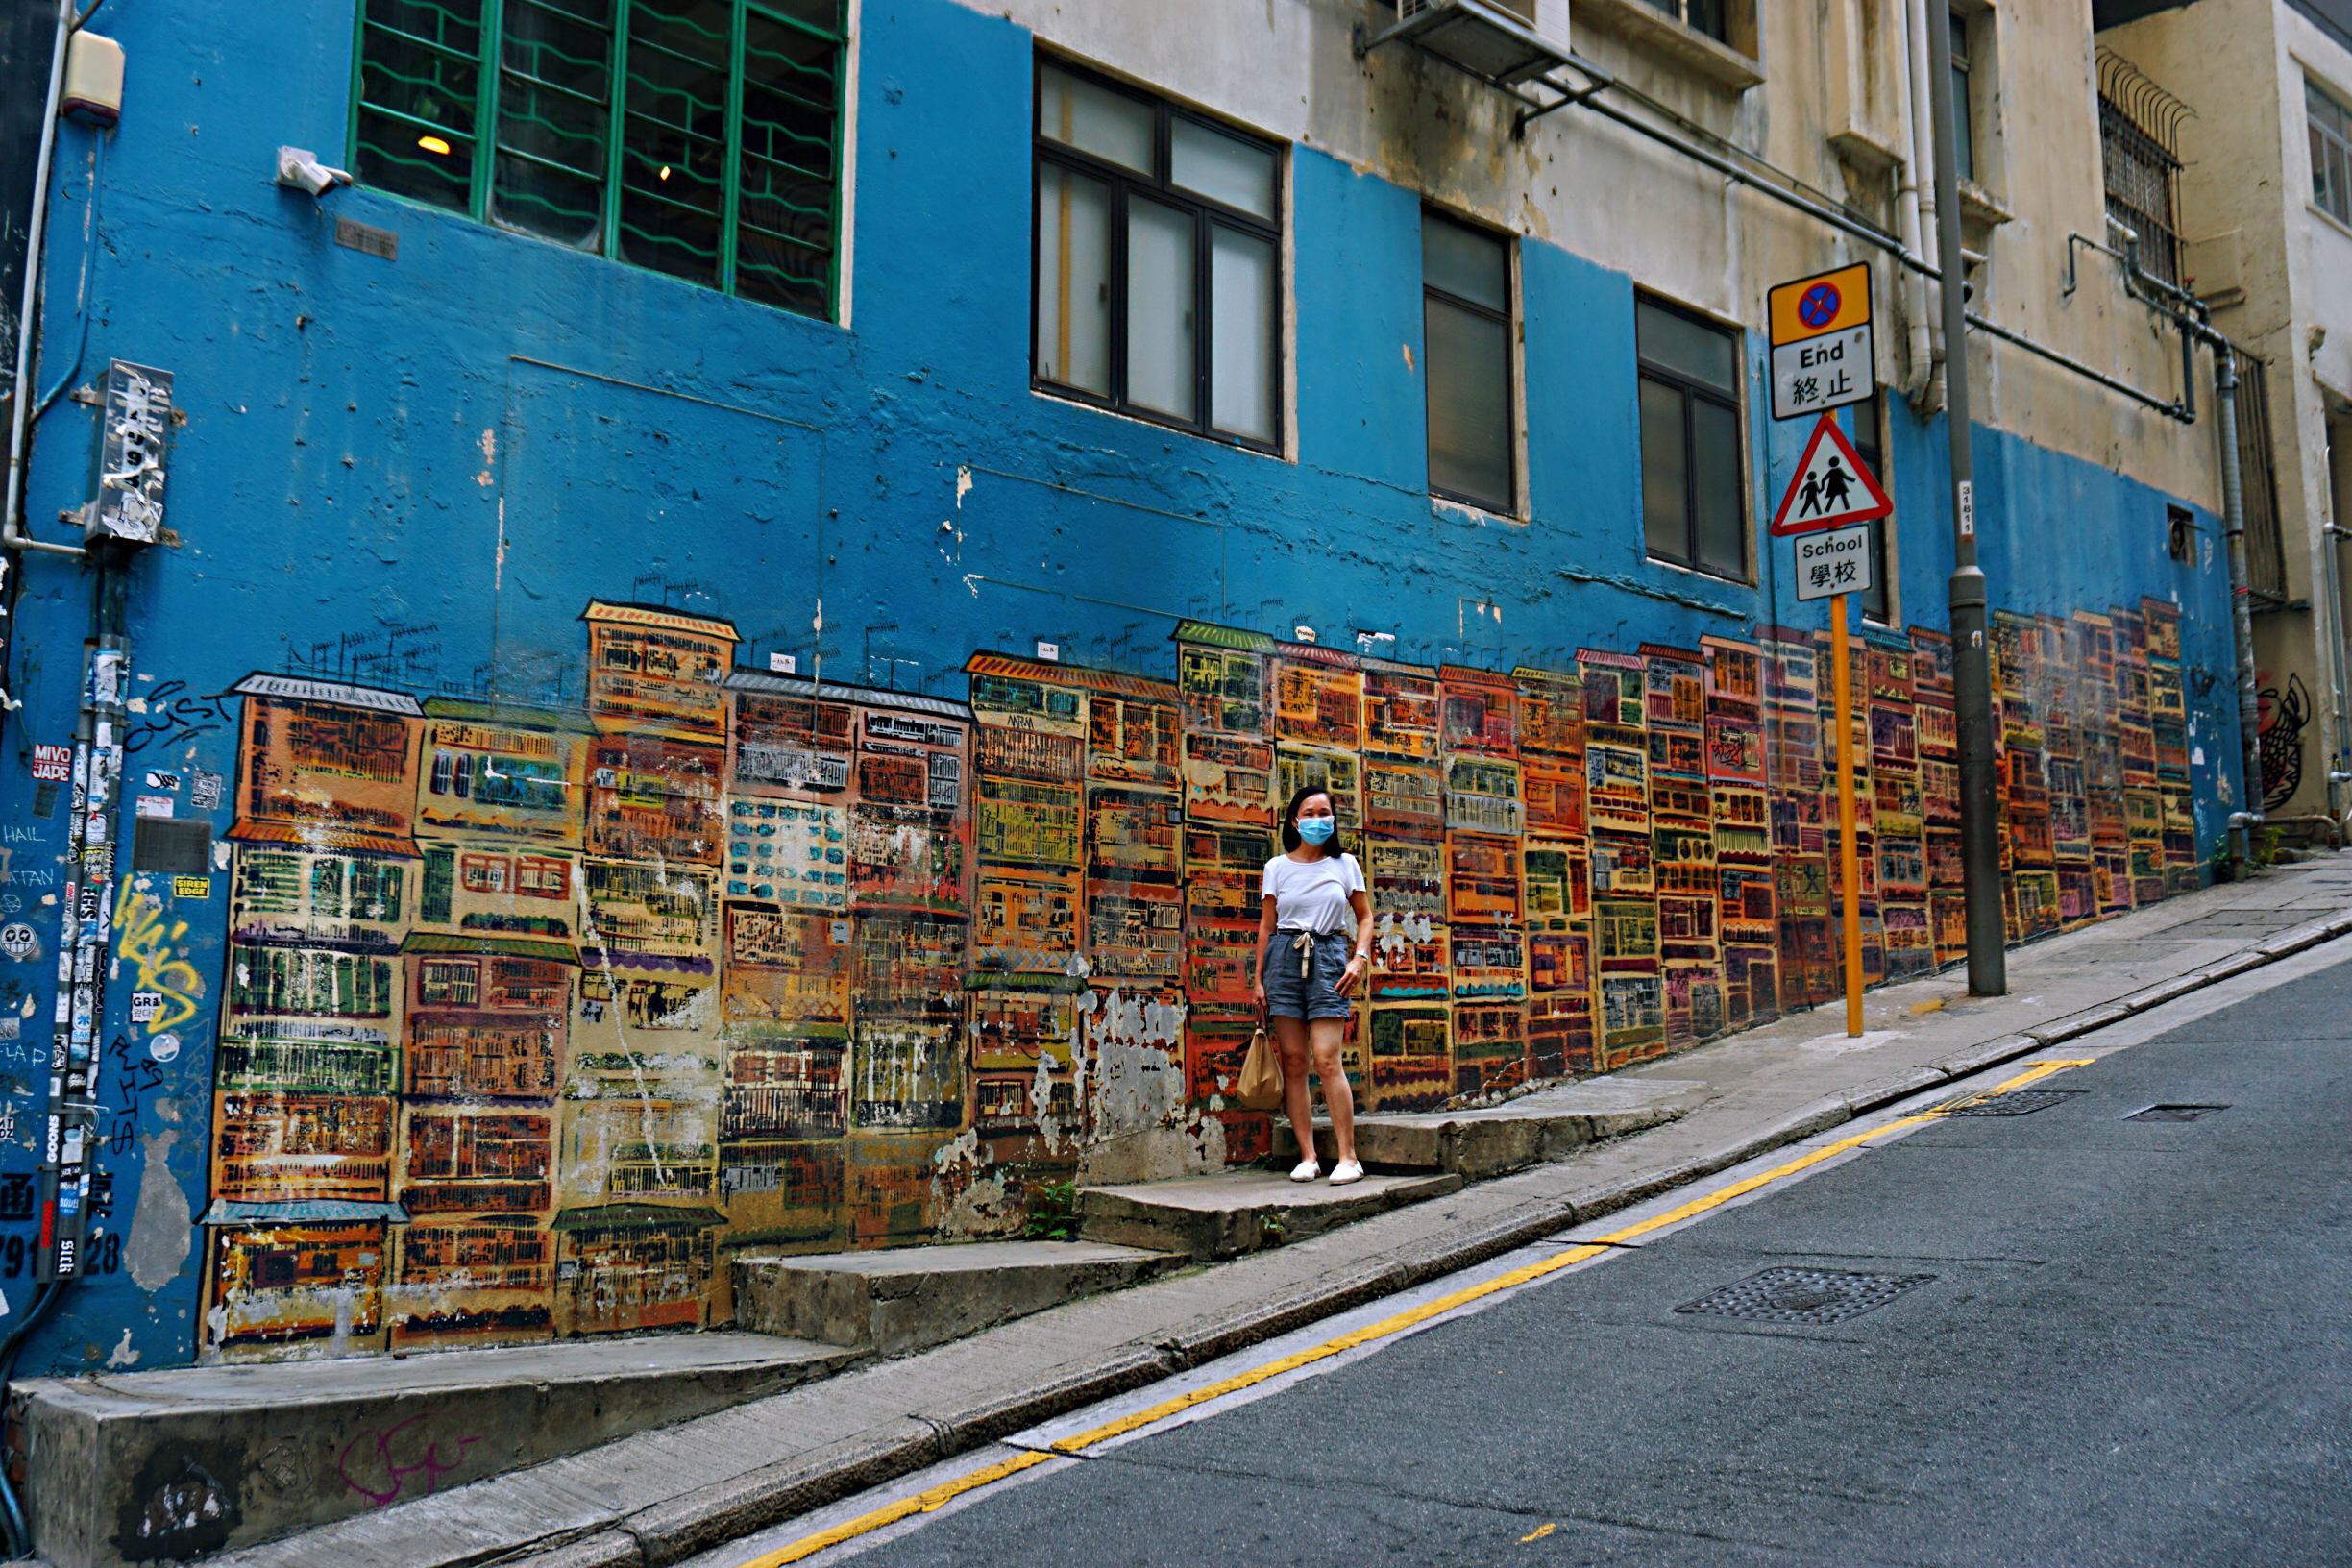  有人說，中上環就像濃縮了的香港，是旅人認識香港的一扇窗。大街小巷遍布古蹟、廟宇、畫廊、老字號、潮店、餐廳和酒吧……兼備古今中西，傳統與創意，繁華與寧靜。摩天大廈的巷弄裏，隱藏着一條色彩斑斕的壁畫線，「神出鬼沒」的壁畫塗鴉，不必刻意尋找，返工放工途中，就可能轉角遇到驚喜。而在港島的西南隅，西營盤的民居、黃竹坑的工廈間，也充滿了妙趣橫生的壁畫，成為大家朝夕相對的日常風景。圖為：中環嘉咸街階梯壁畫，以九龍城寨為背景
